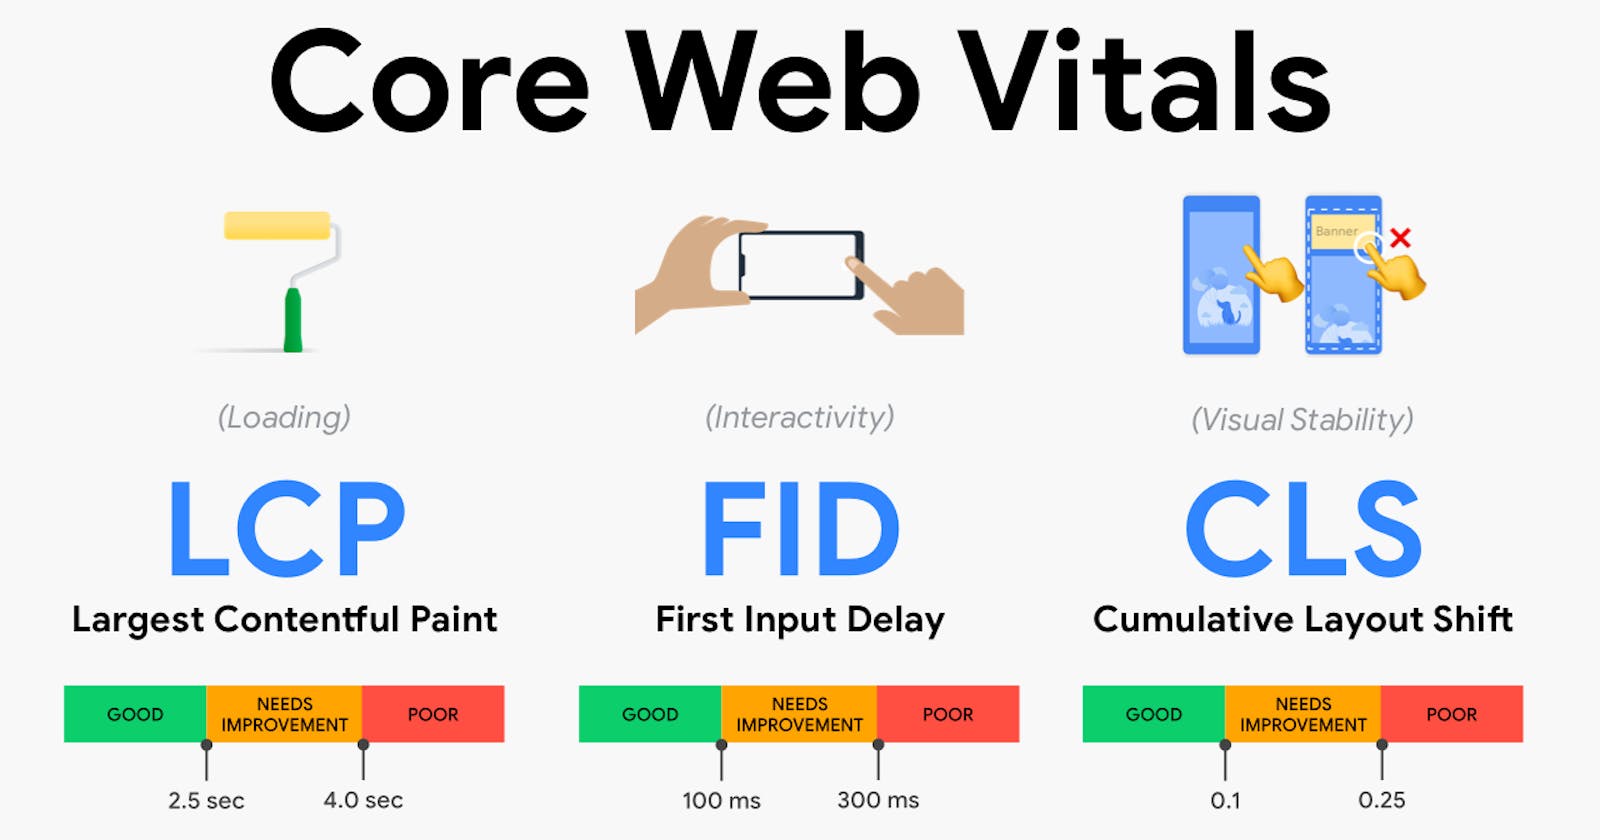 The Core Web Vitals For Better Development